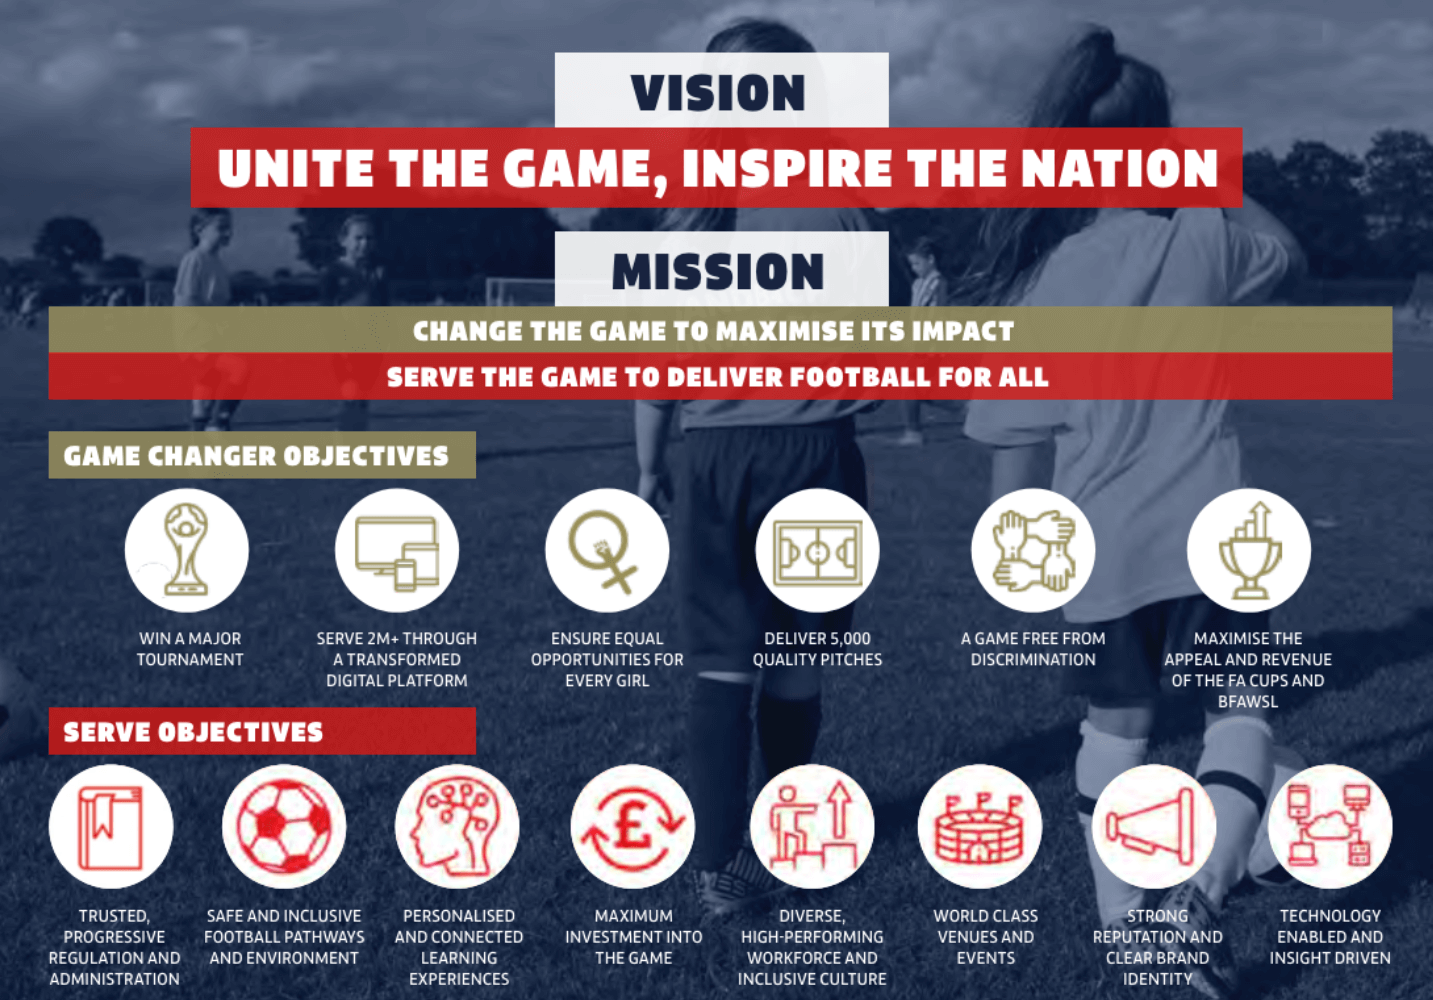 The FA Vision